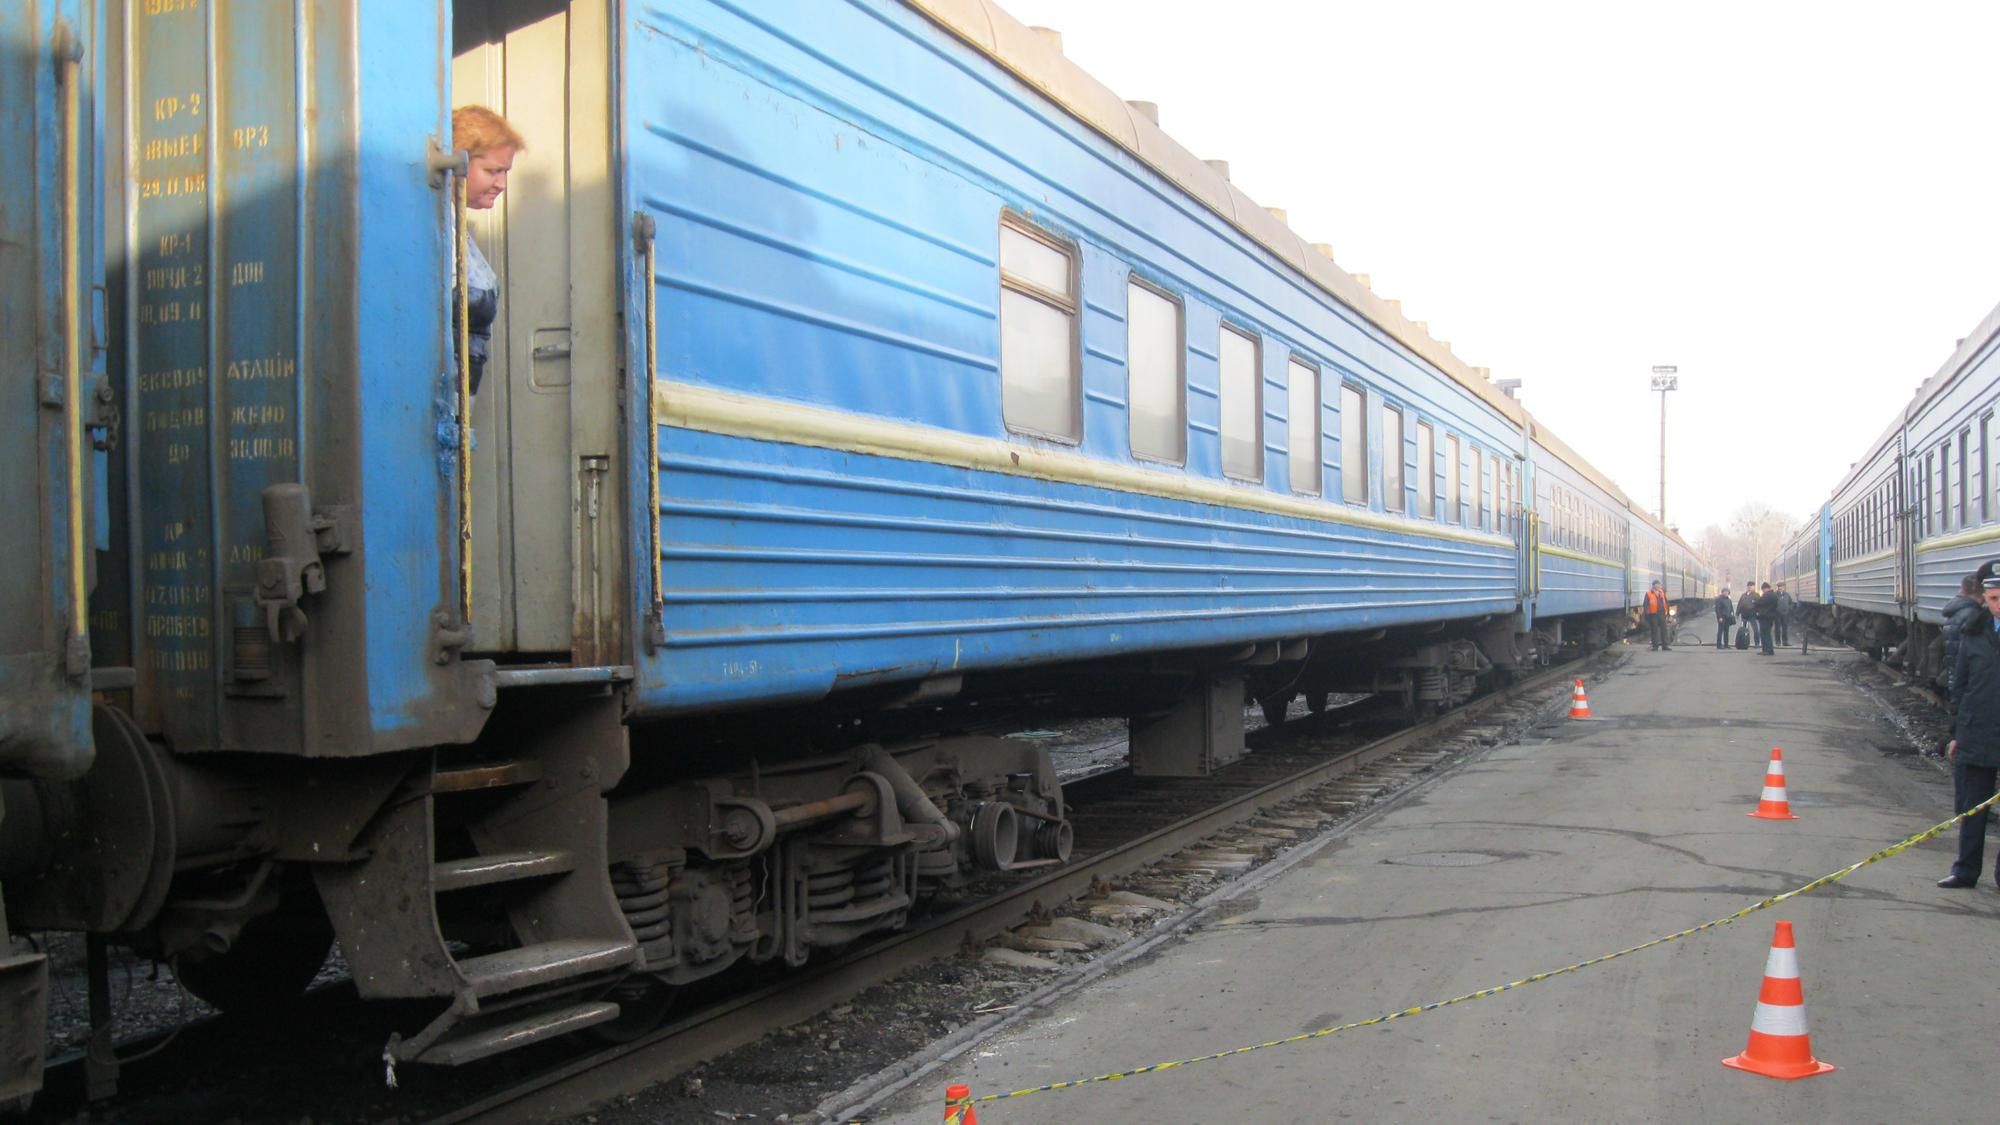 Поезд-убийца унес жизни трех человек в Донецкой области